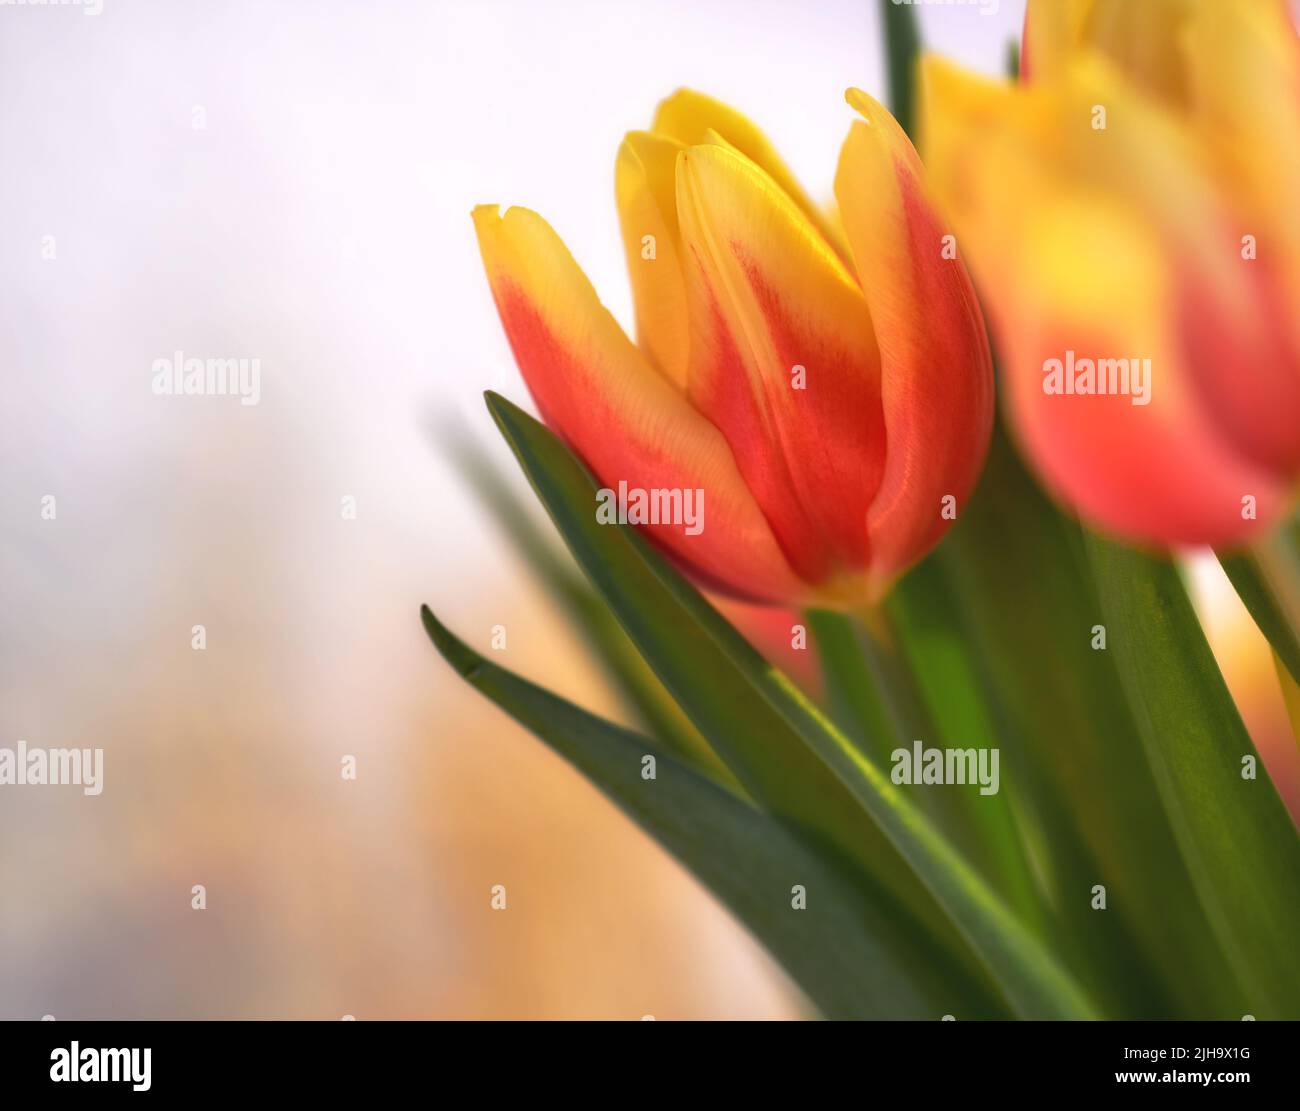 Nahaufnahme von orangefarbenen Tulpen auf isoliertem Hintergrund mit Kopierbereich. Ein Strauß oder ein Strauß von schönen Tulpenblüten mit grünen Stielen, die als Ornamente für gewachsen sind Stockfoto